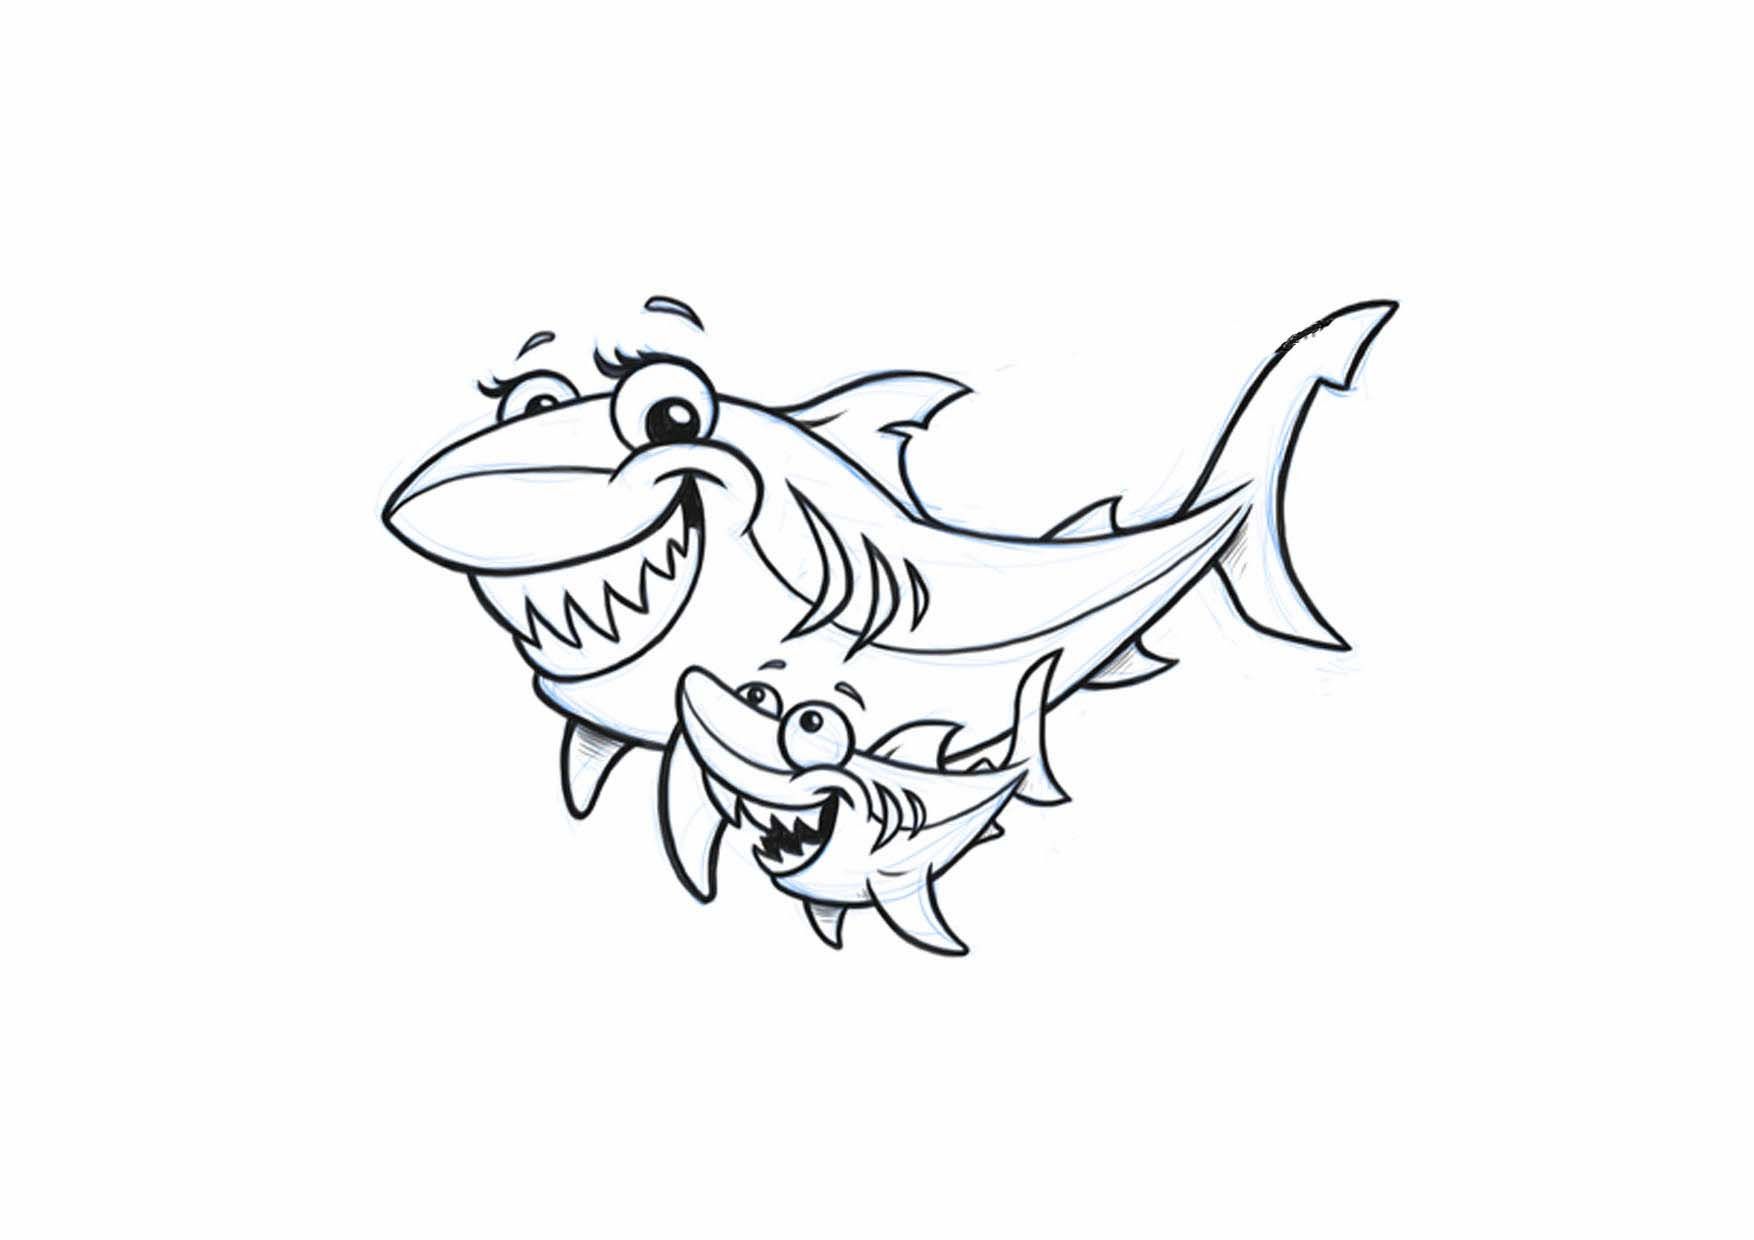 Tranh tô màu cá mập mẹ và cá mập con